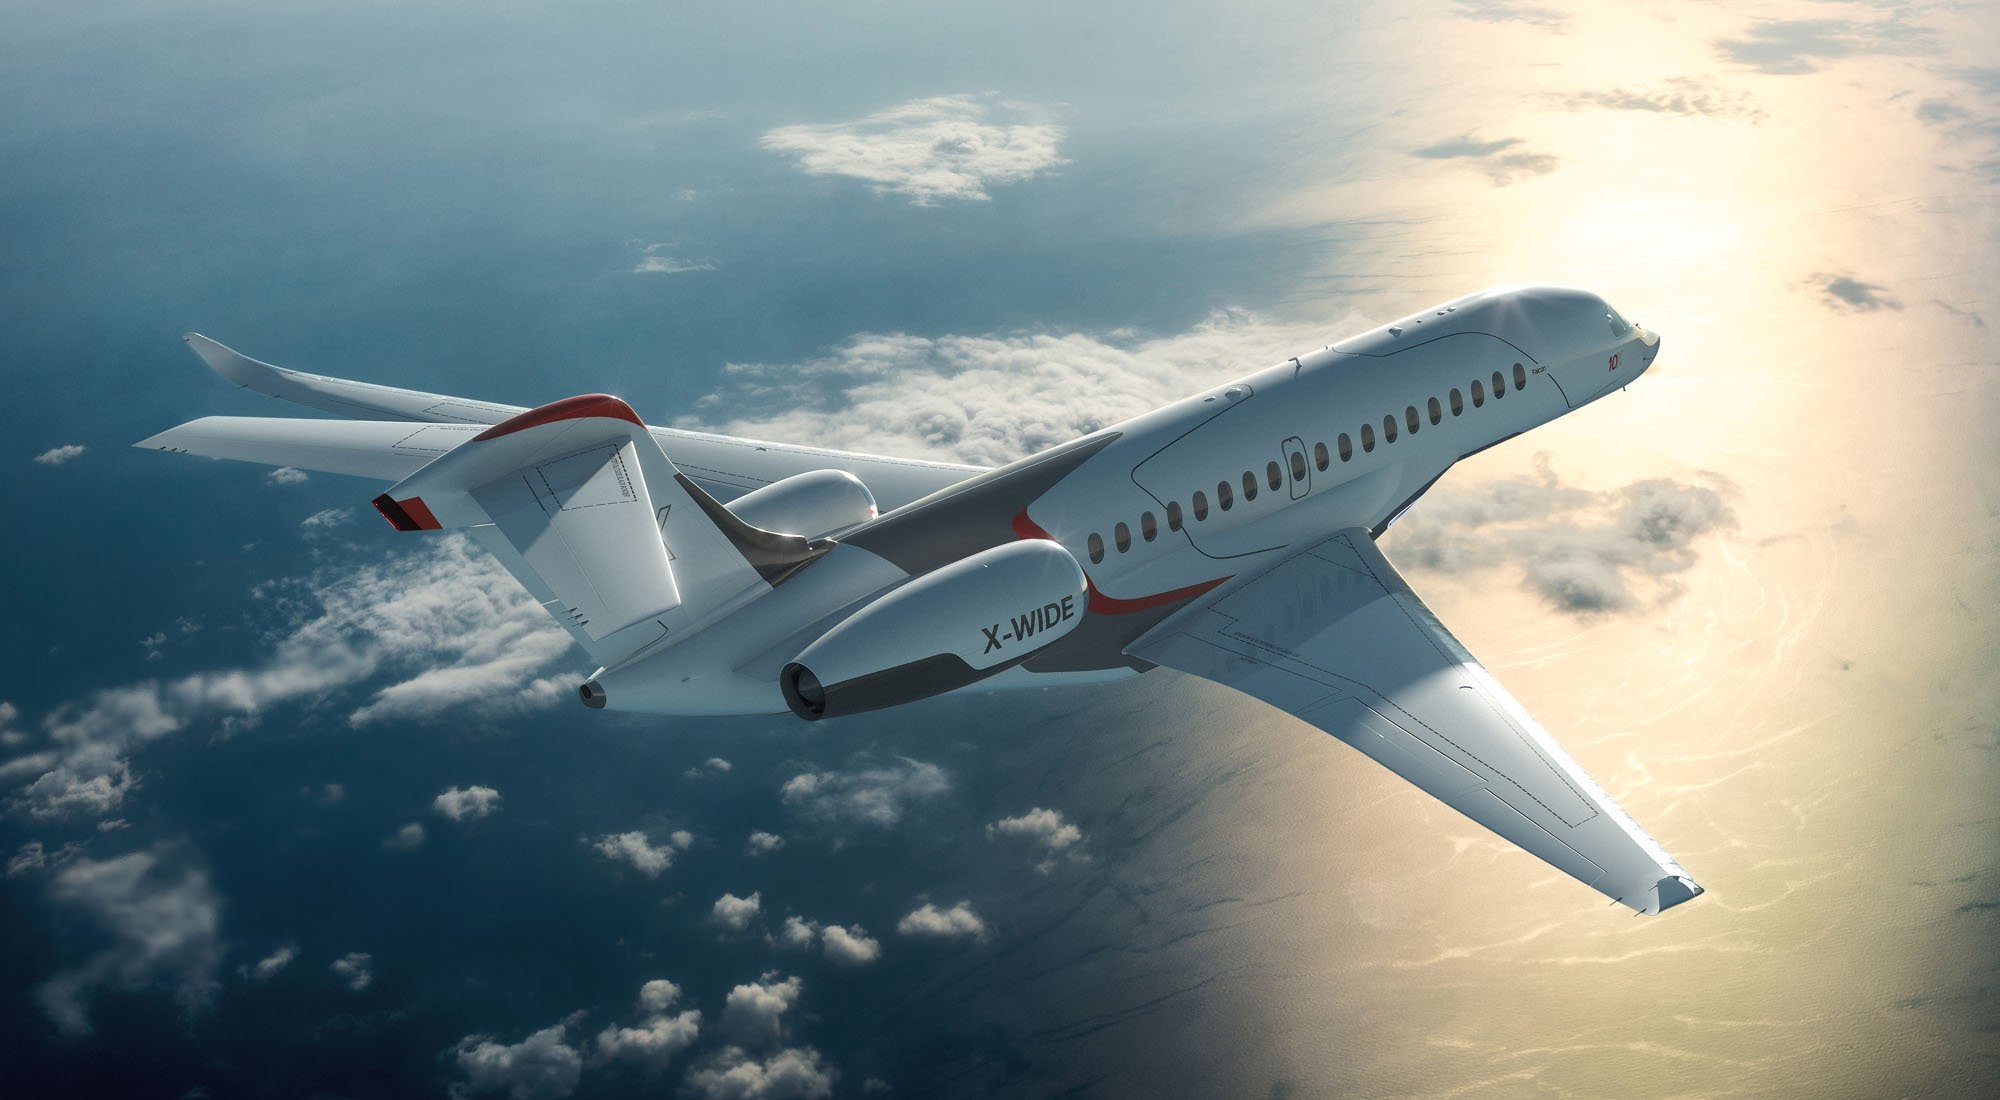 New private jet Falcon 10X